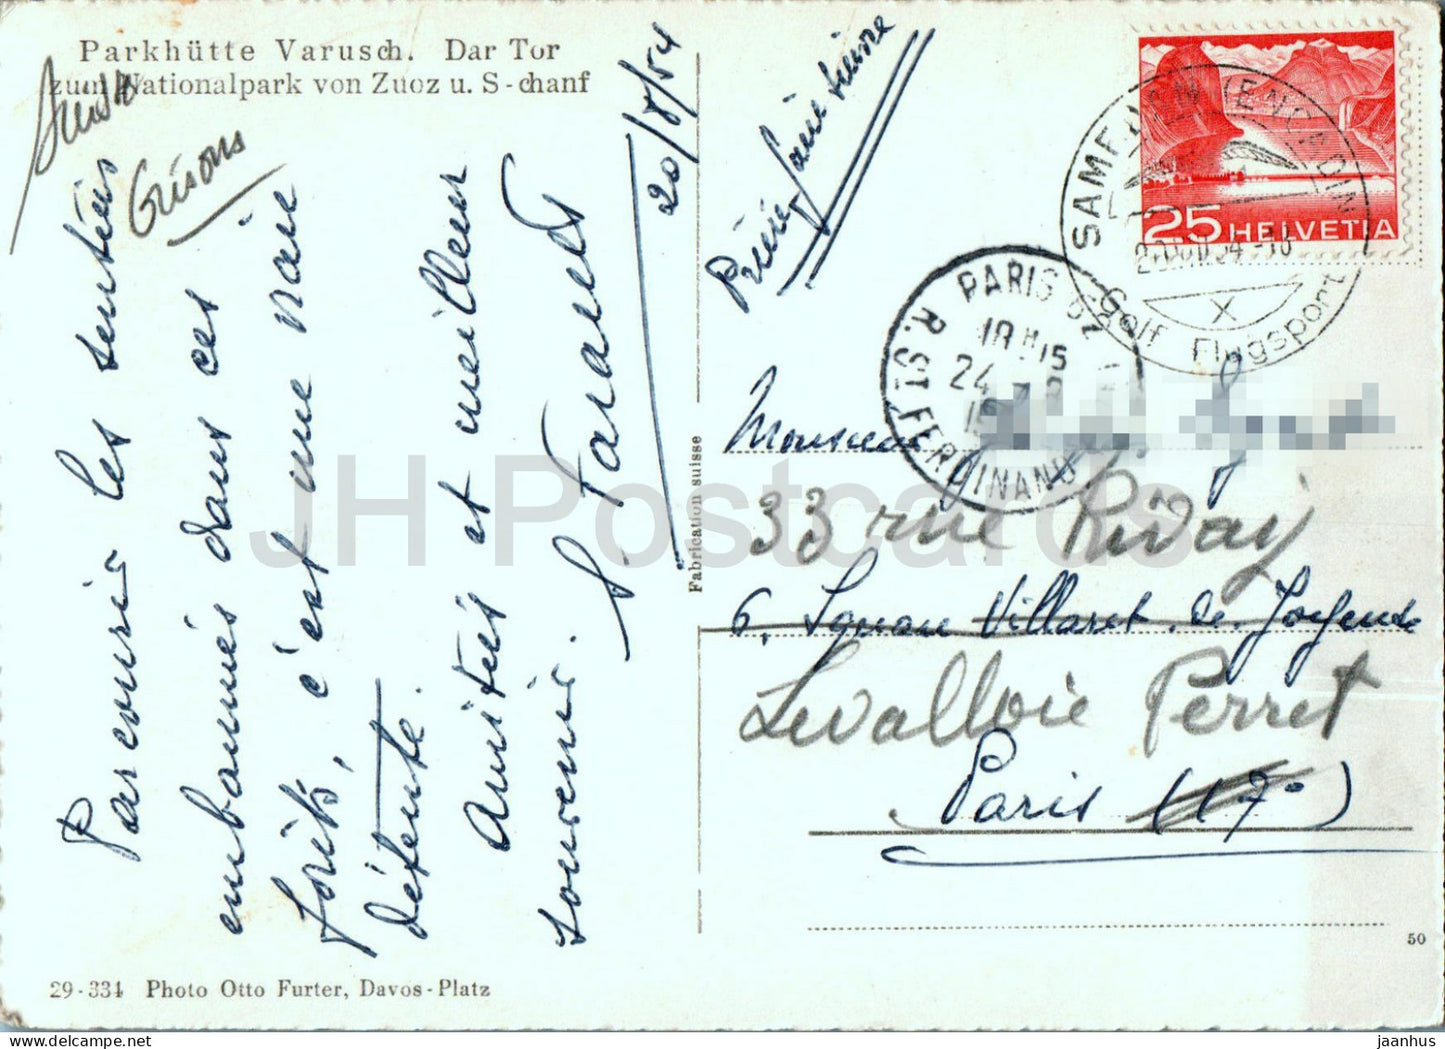 Parkhutte Varusch - Dar Tor zum Nationalpark von Zuoz u S-chanf - 334 - alte Postkarte - 1954 - Schweiz - gebraucht